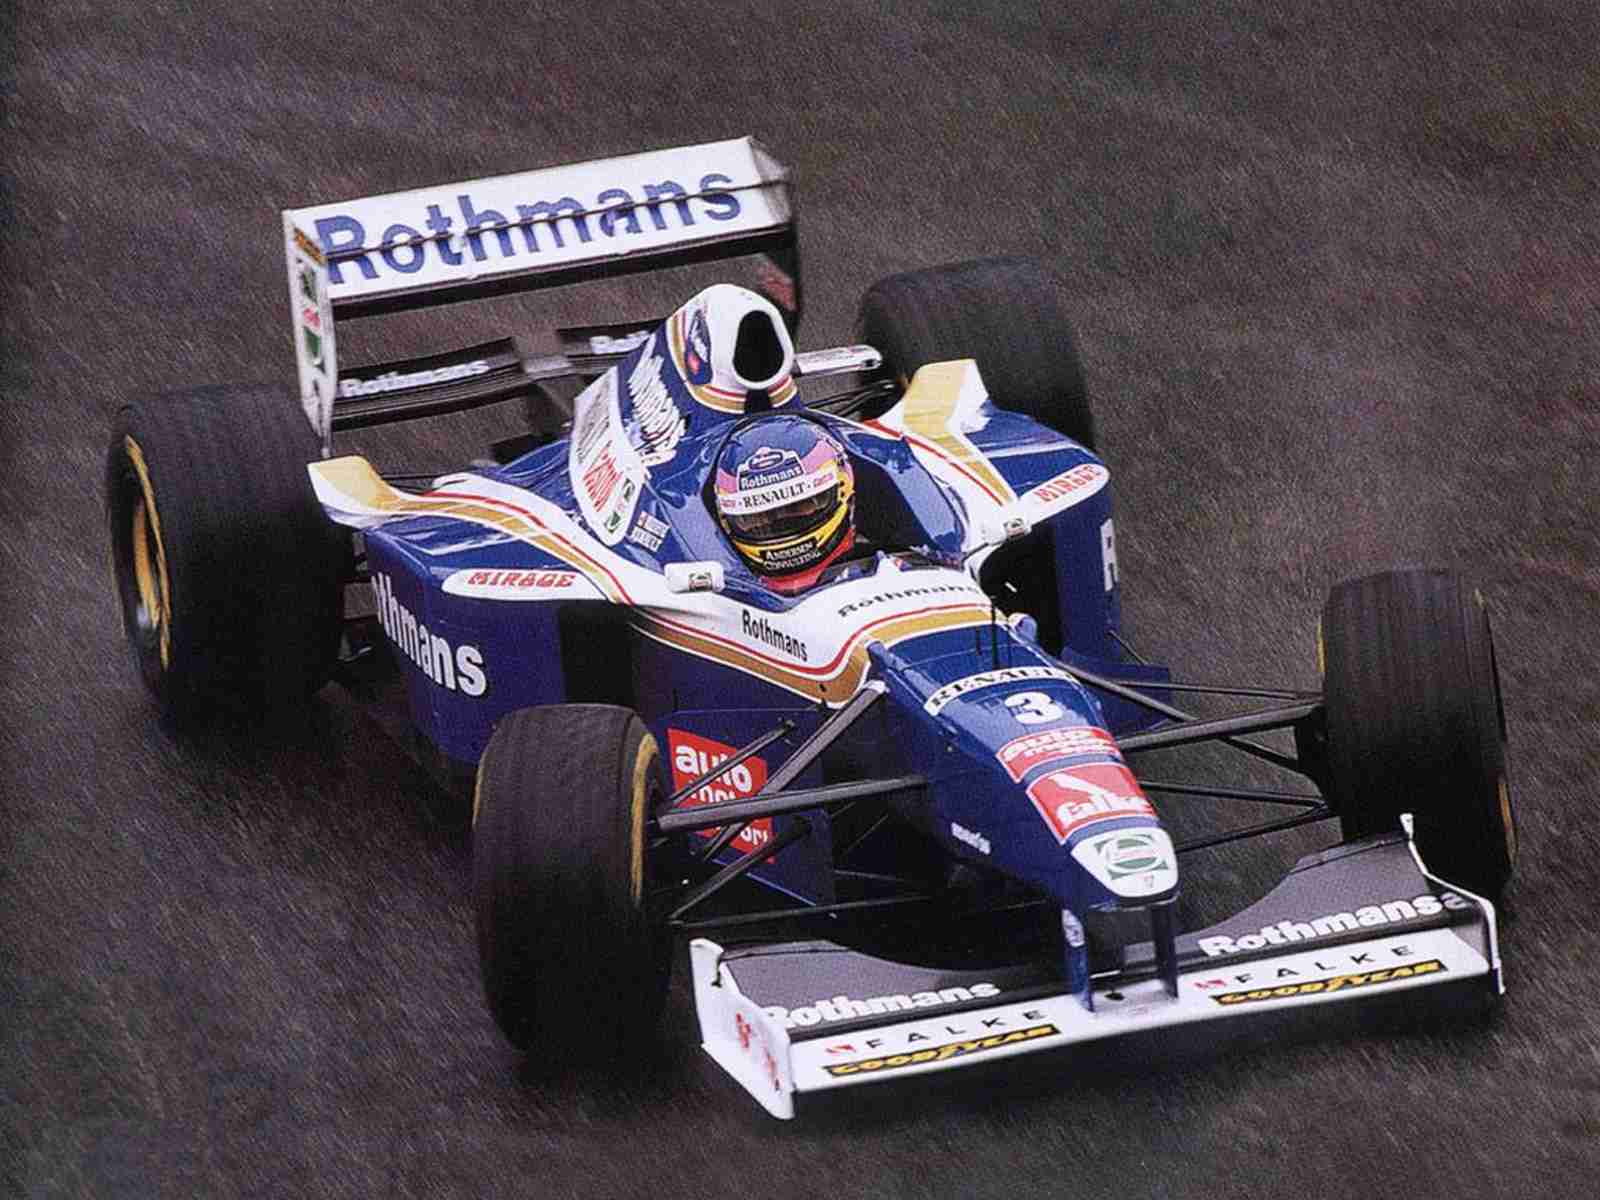 Após disputa ferrenha com Schumacher em 1997, Jacques Villeneuve garantiu o último título da Williams até aqui. Também foi o último piloto nascido nas Américas a ser campeão 